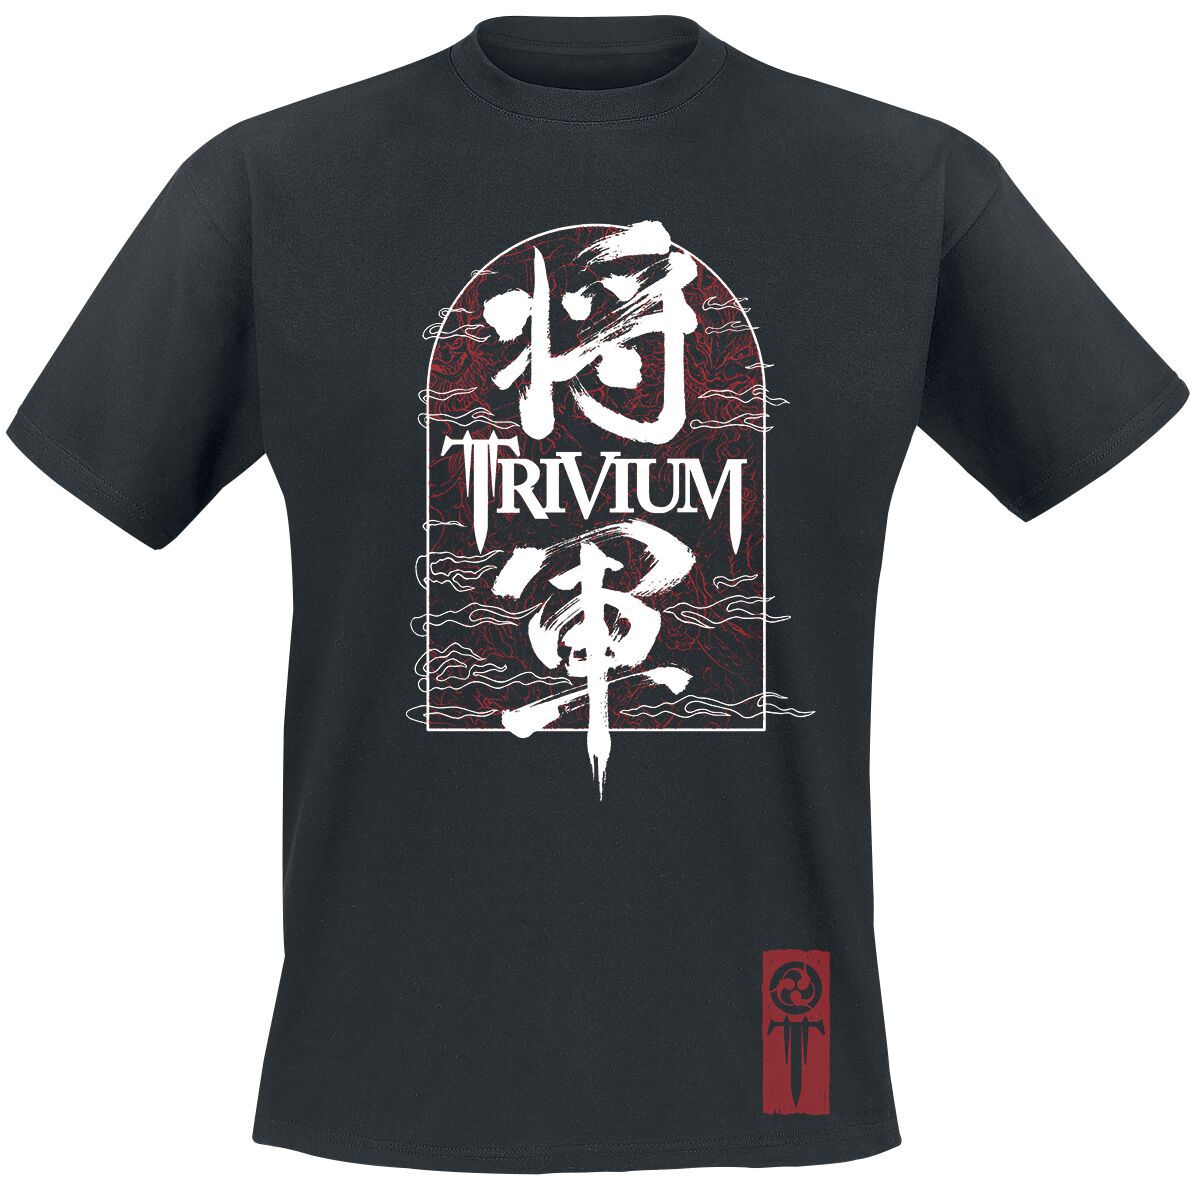 Trivium T-Shirt - Shogun Remix - S bis M - für Männer - Größe M - schwarz  - Lizenziertes Merchandise!